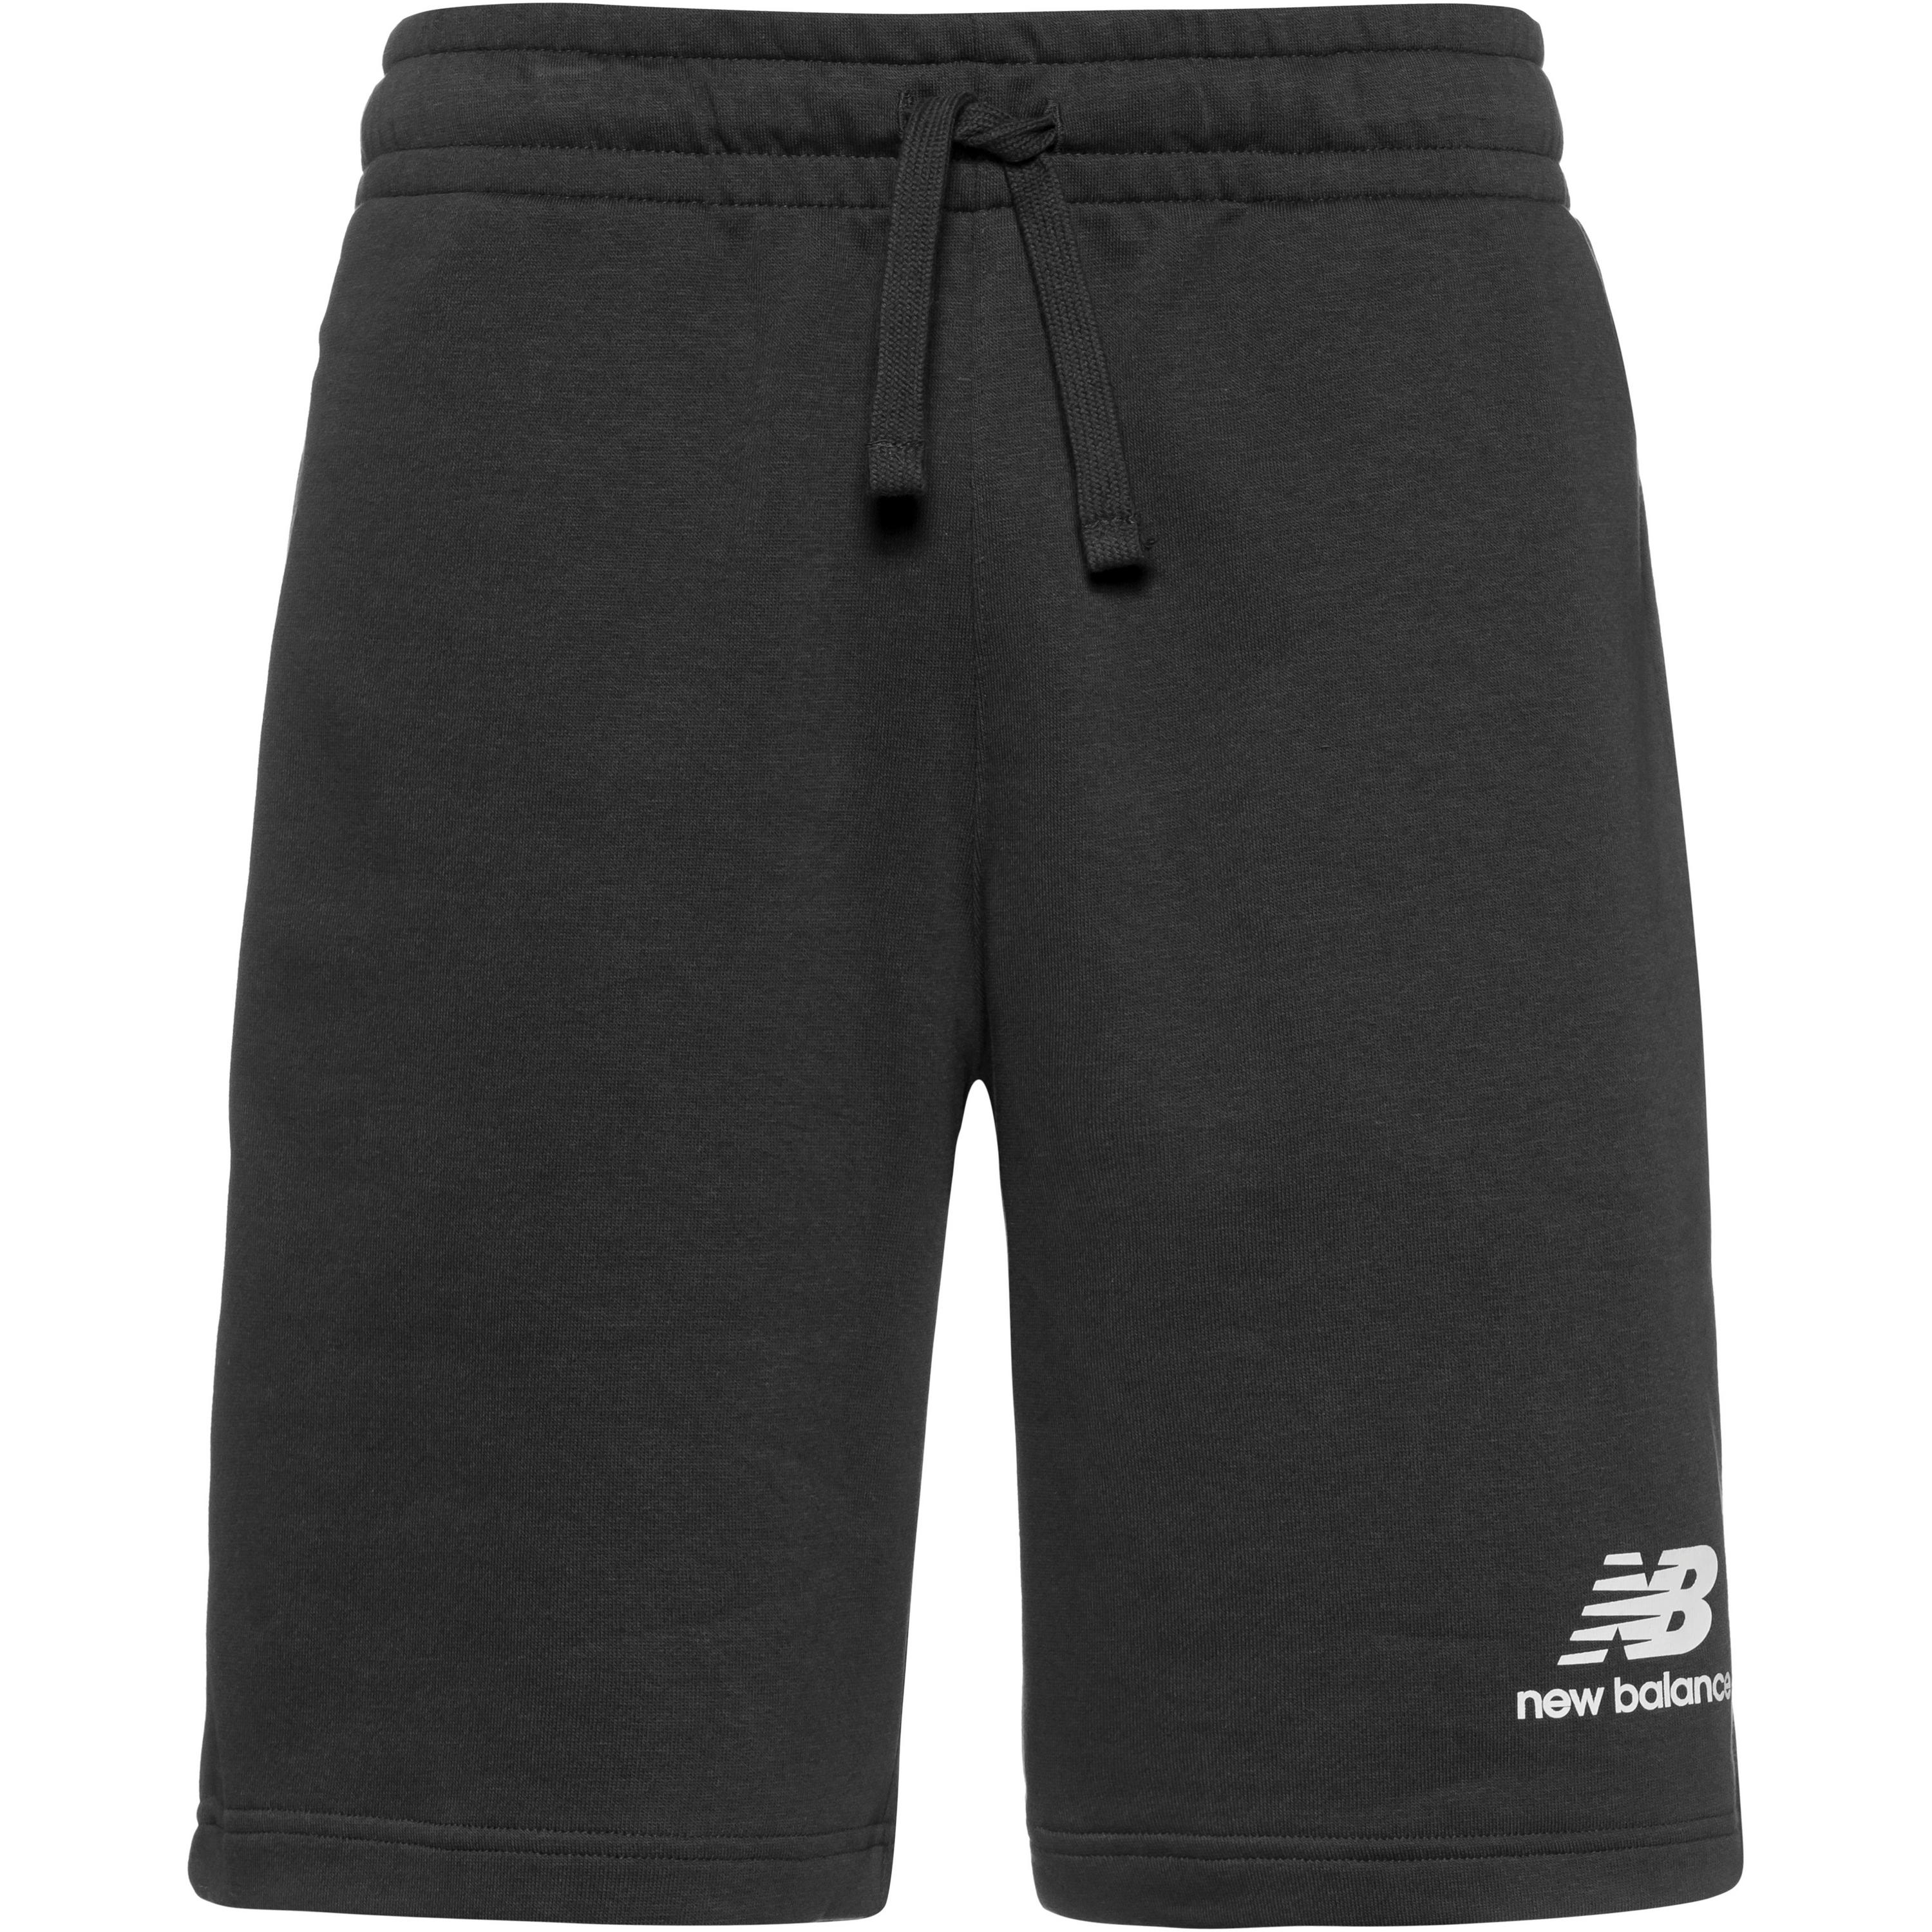 NEW BALANCE Essentials Stacked Shorts Herren